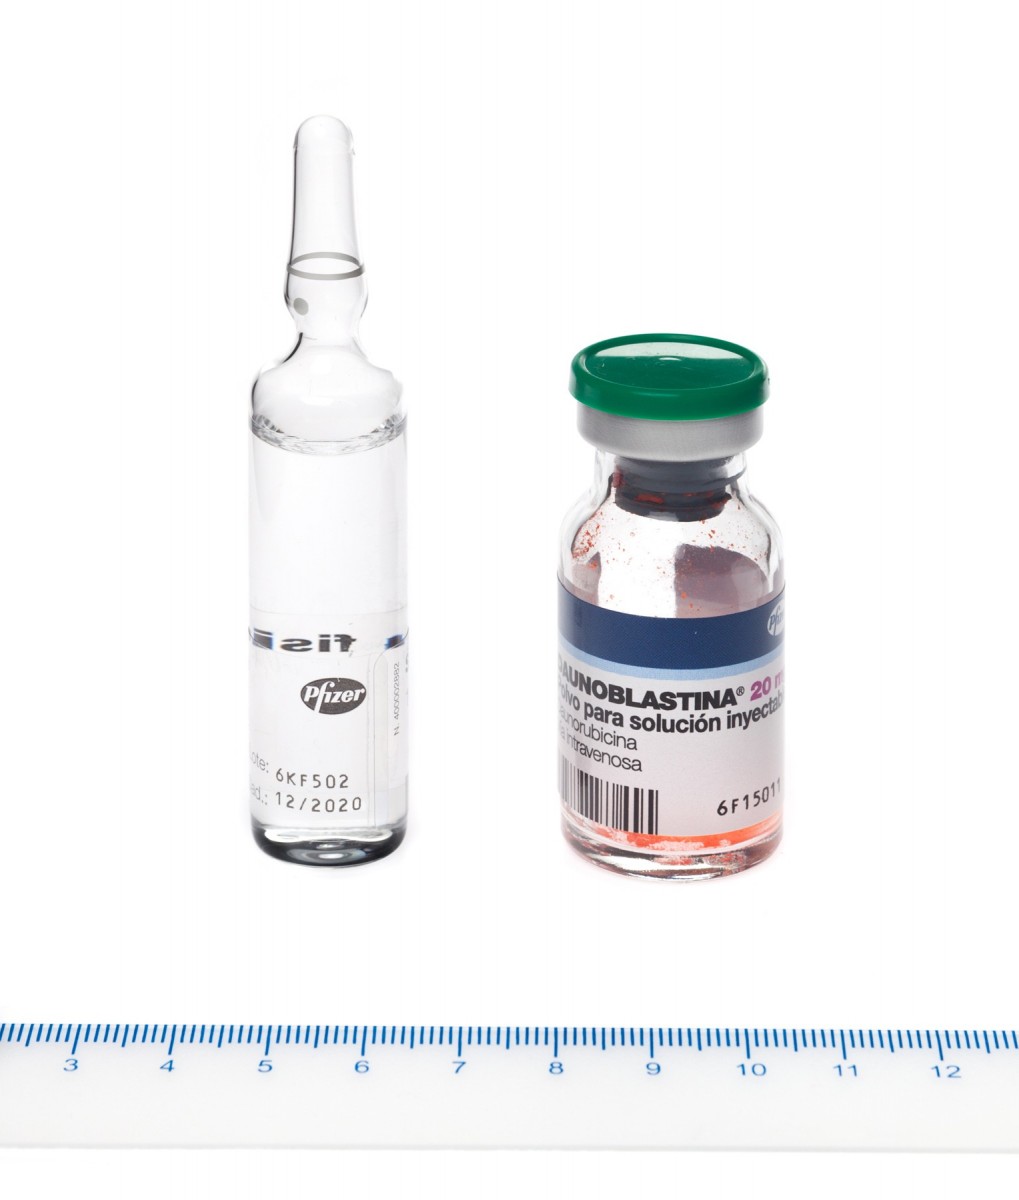 DAUNOBLASTINA 20 mg POLVO Y DISOLVENTE PARA SOLUCION INYECTABLE , 1 vial + 1 ampolla de disolvente fotografía de la forma farmacéutica.